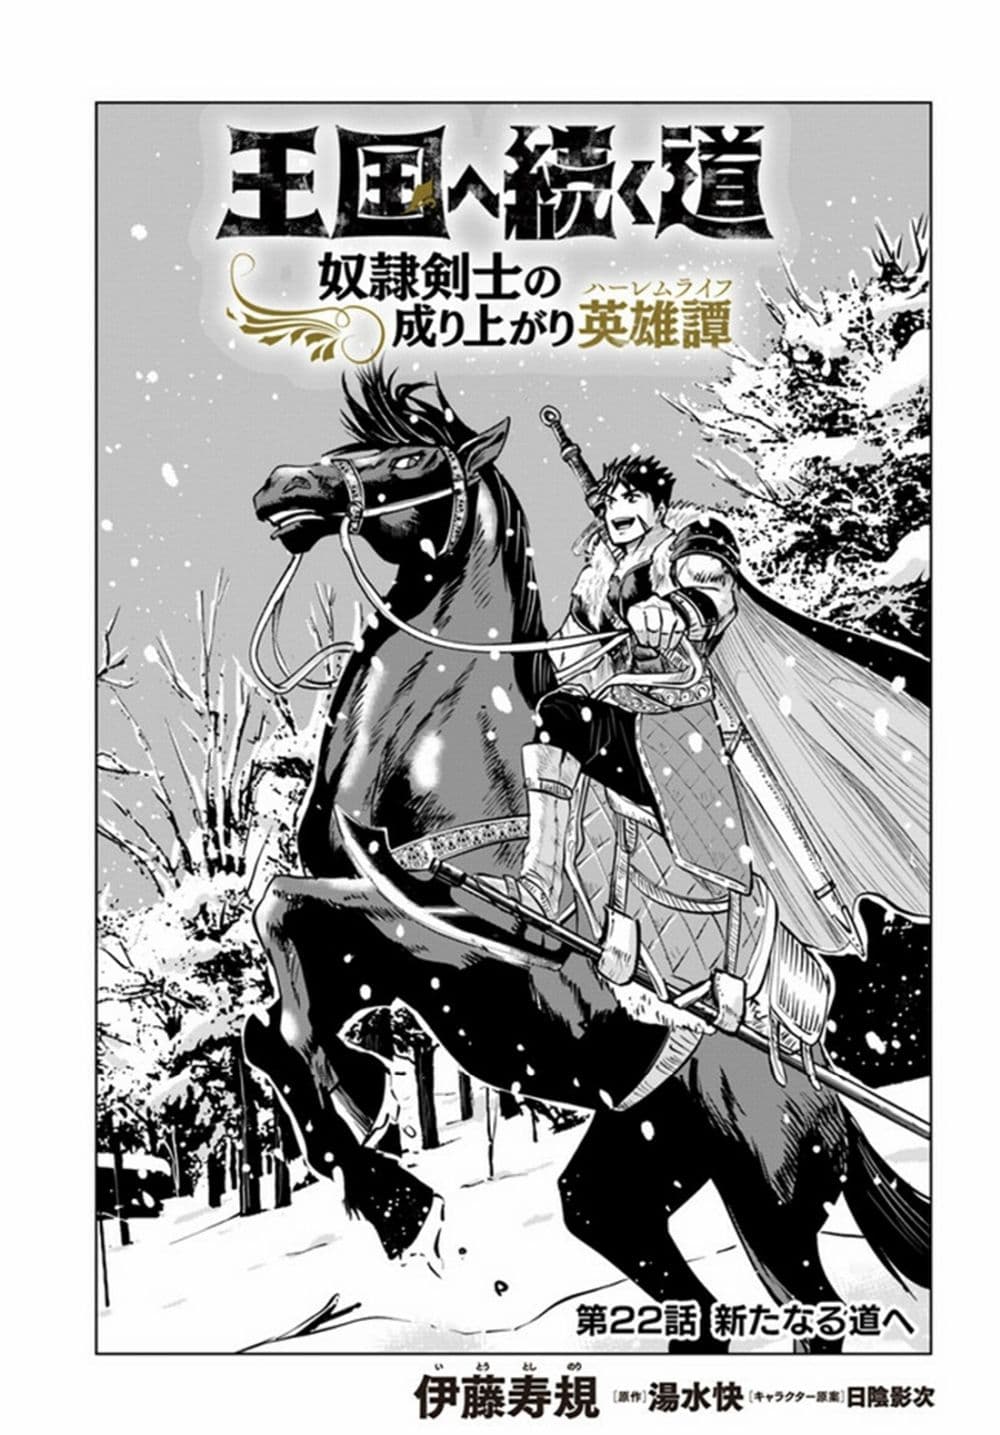 Oukoku e Tsuzuku Michi dorei Kenshi no Nariagari Eiyutan (Haaremu Raifu) - Road to the Kingdom Slave Swordsman the Rise of Heroes - Harem Life 22-22